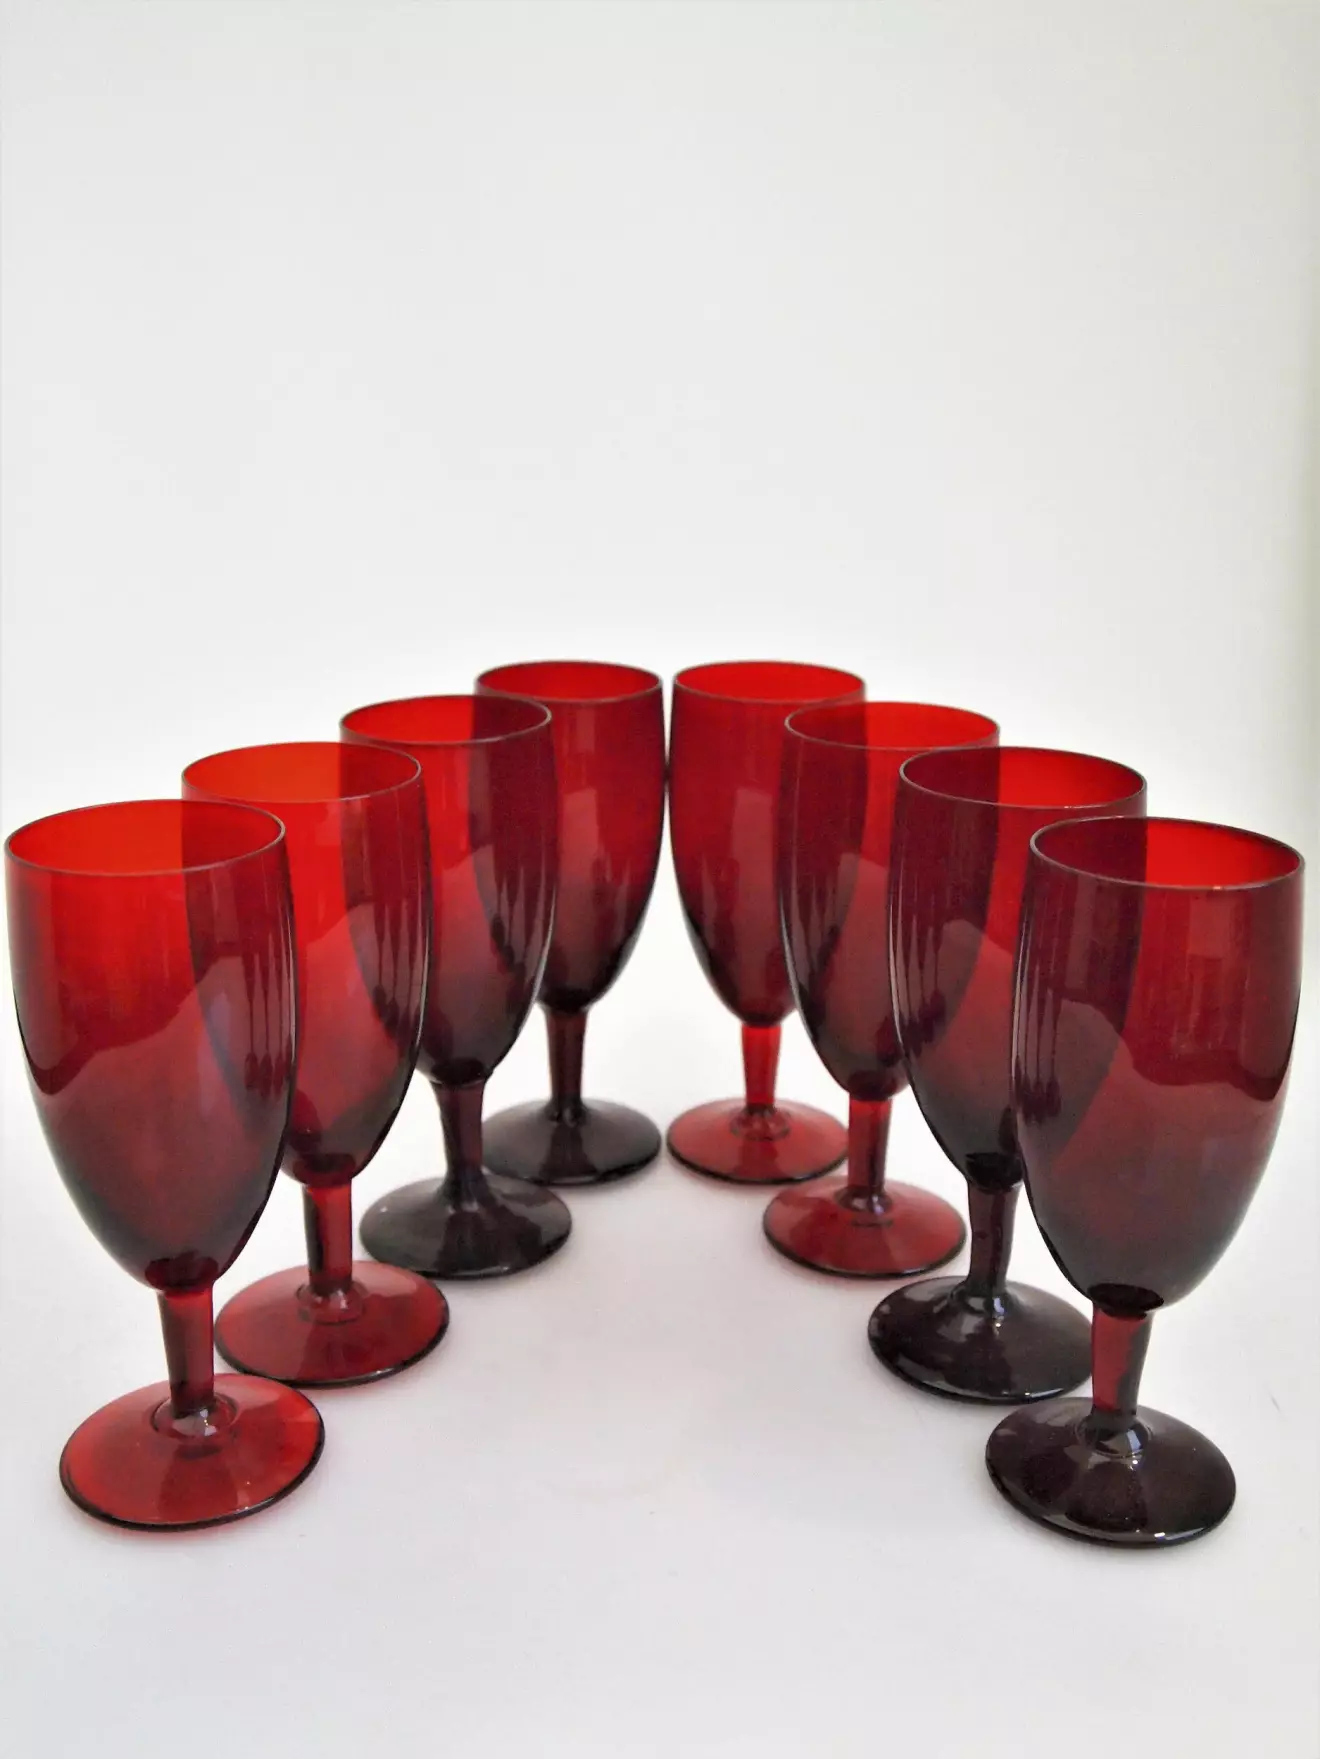 Monica Bratt började på Reijmyre glasbruk 1937 och blev kvar där i drygt 20år. Hon byggde upp en helt egen kollektion och gjorde stora insatser för bruket. De rubinröda glasen är bland hennes mest kända skapelser. Höjden är 15cm. 450kr för åtta glas på Lysekils Auktionsbyrå.